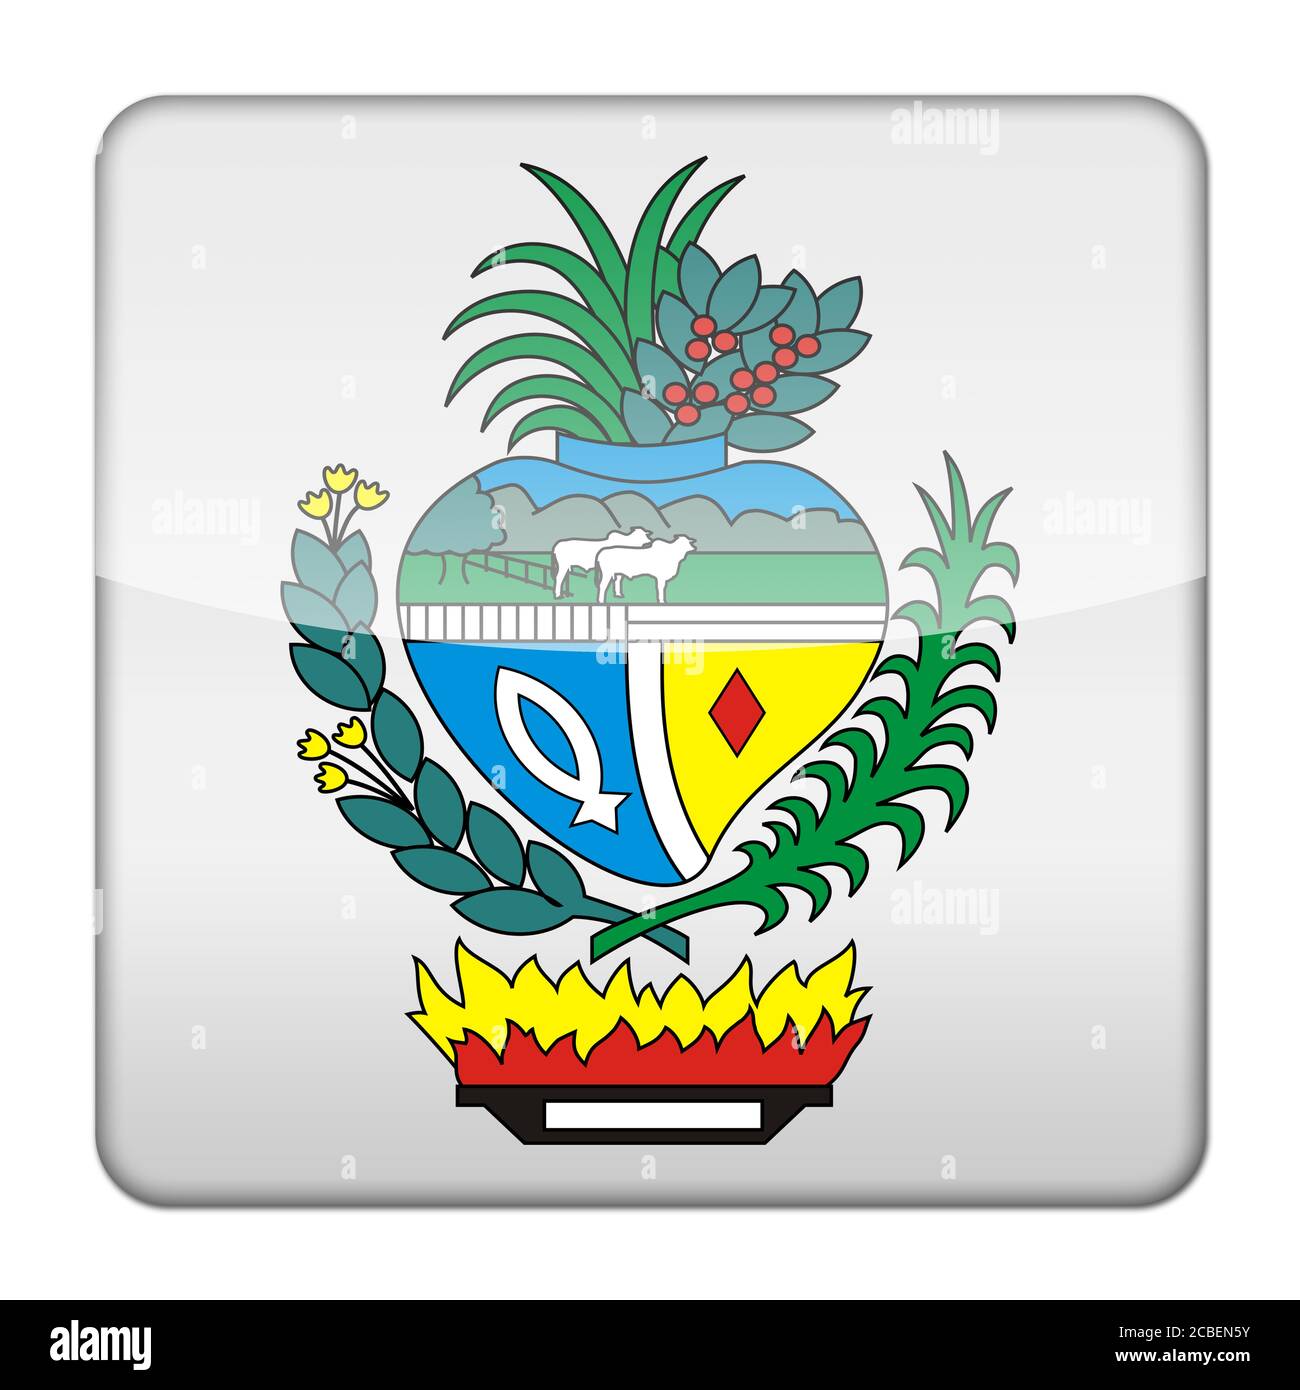 Glossy logo icon app flag seal of the Brazilian state Goias Stock Photo